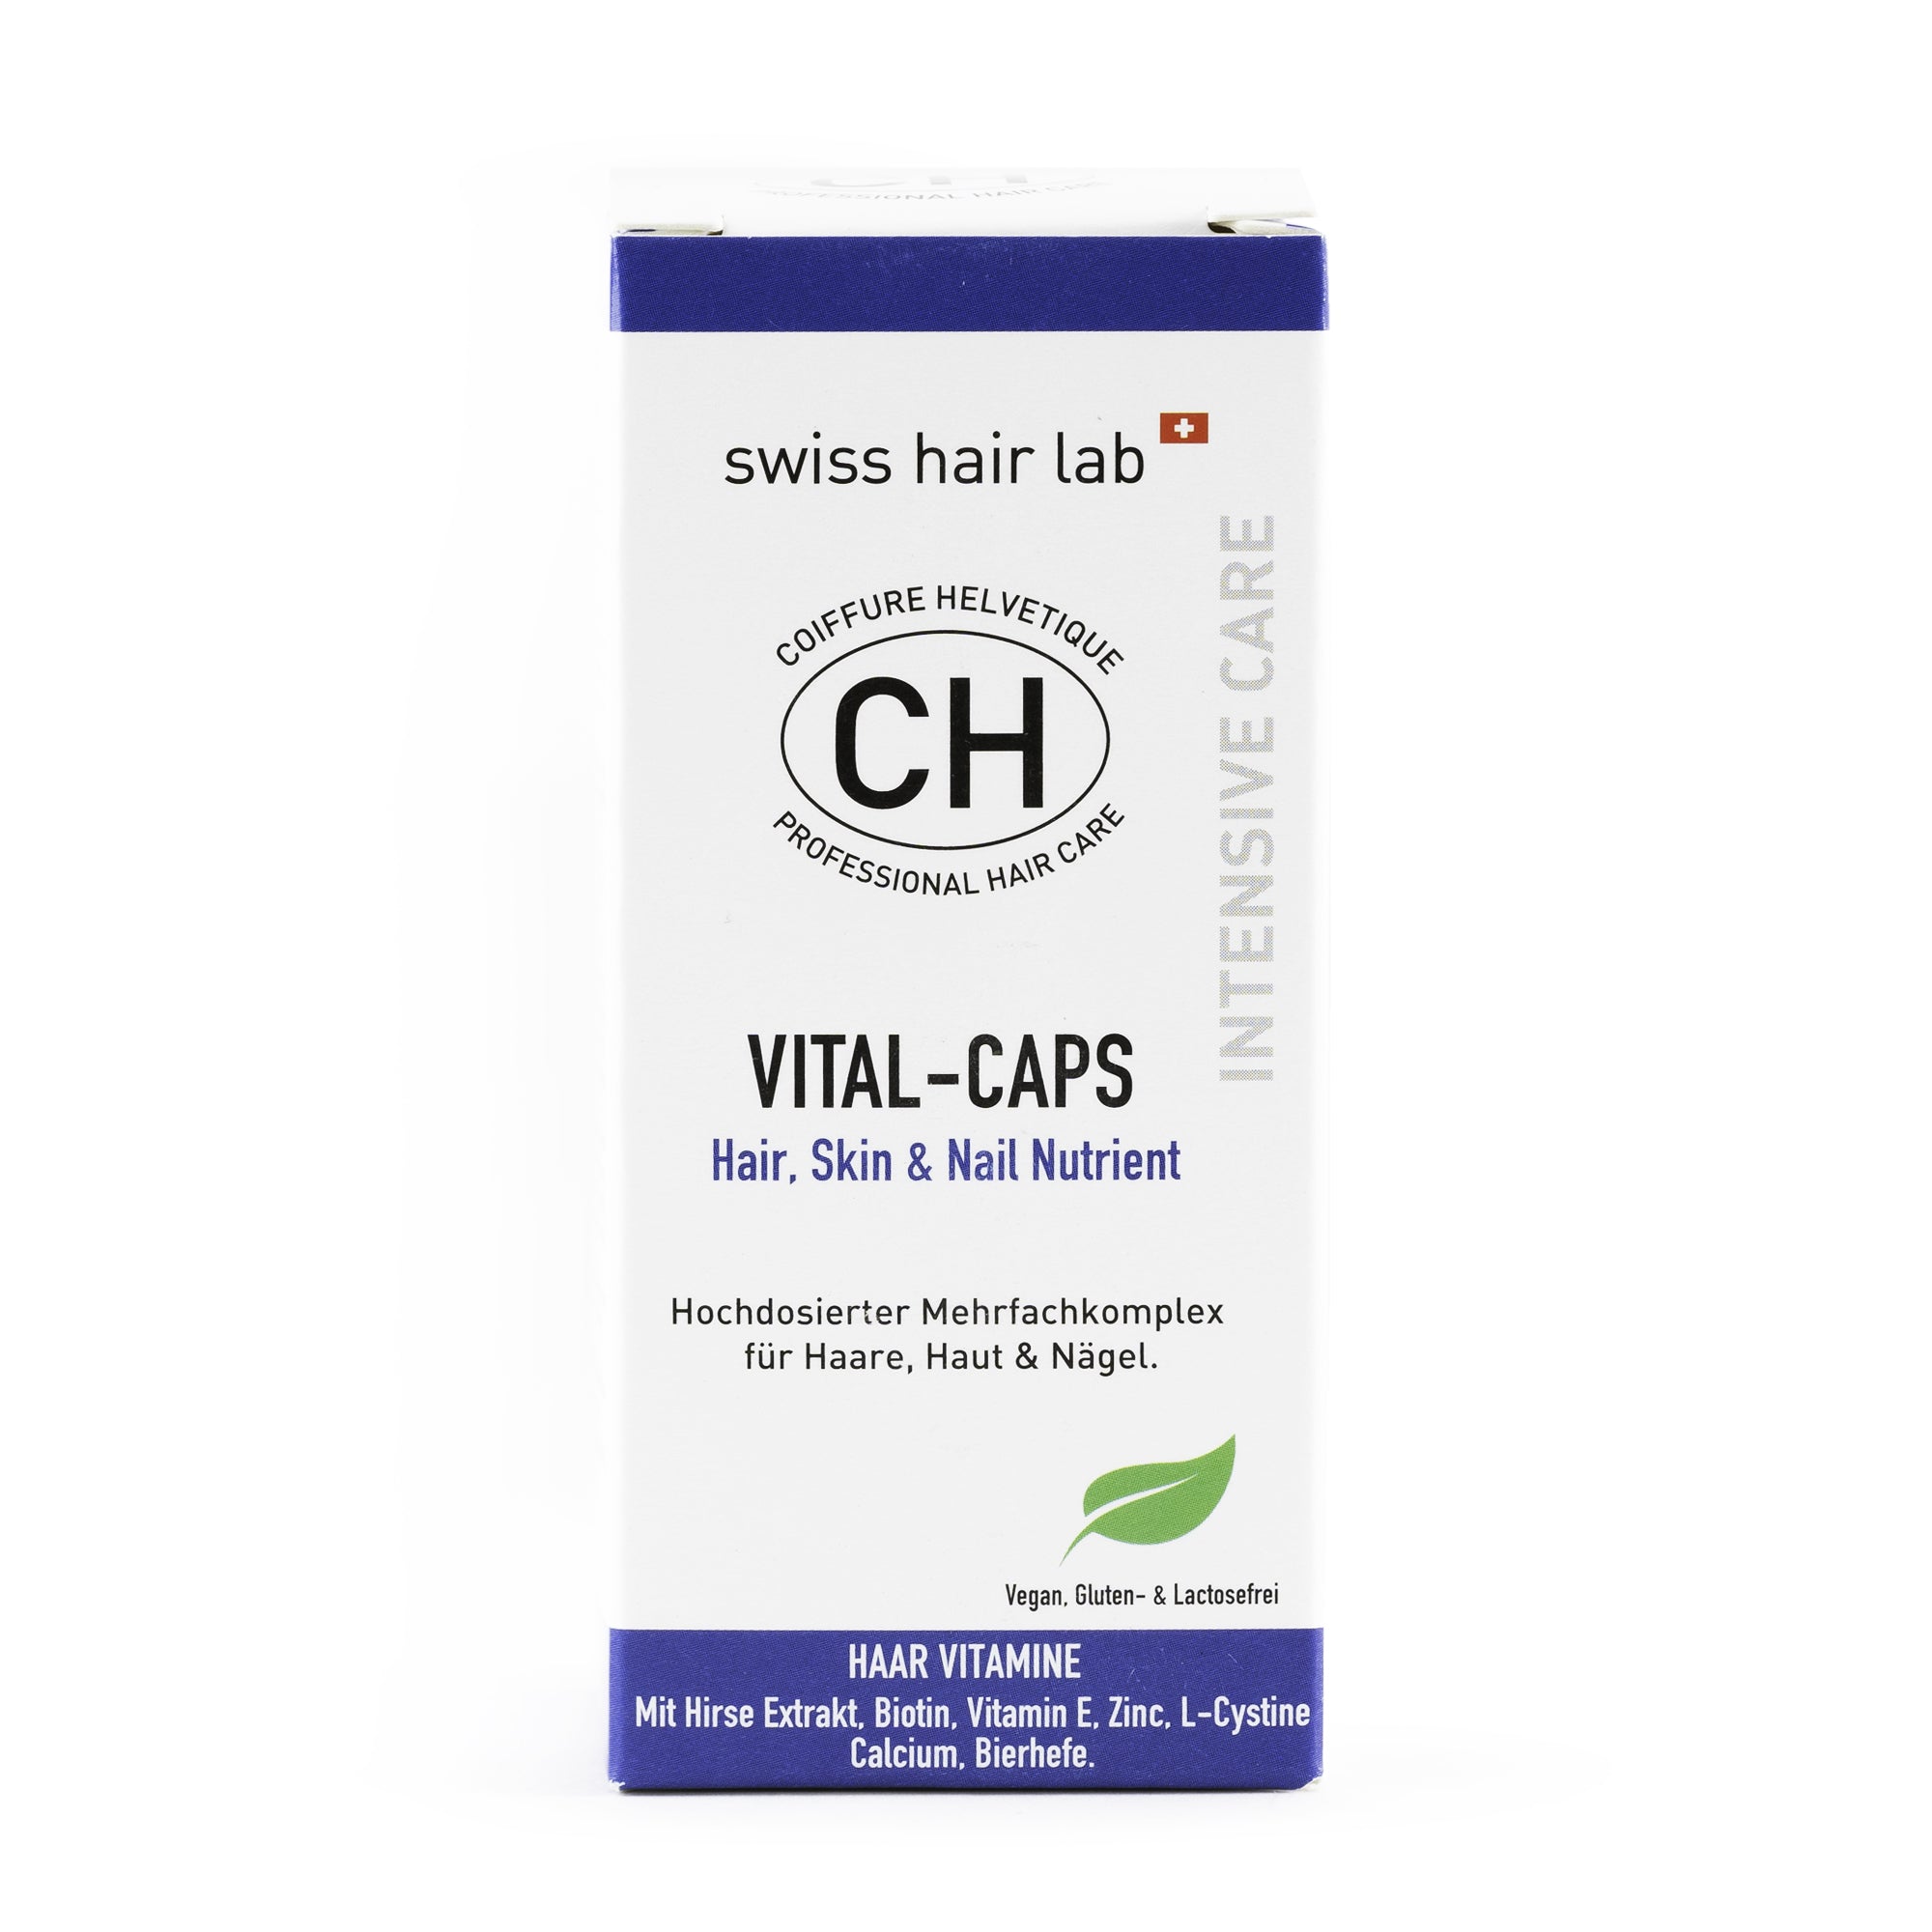 VITAL-CAPS Hair & Nail Nutrient